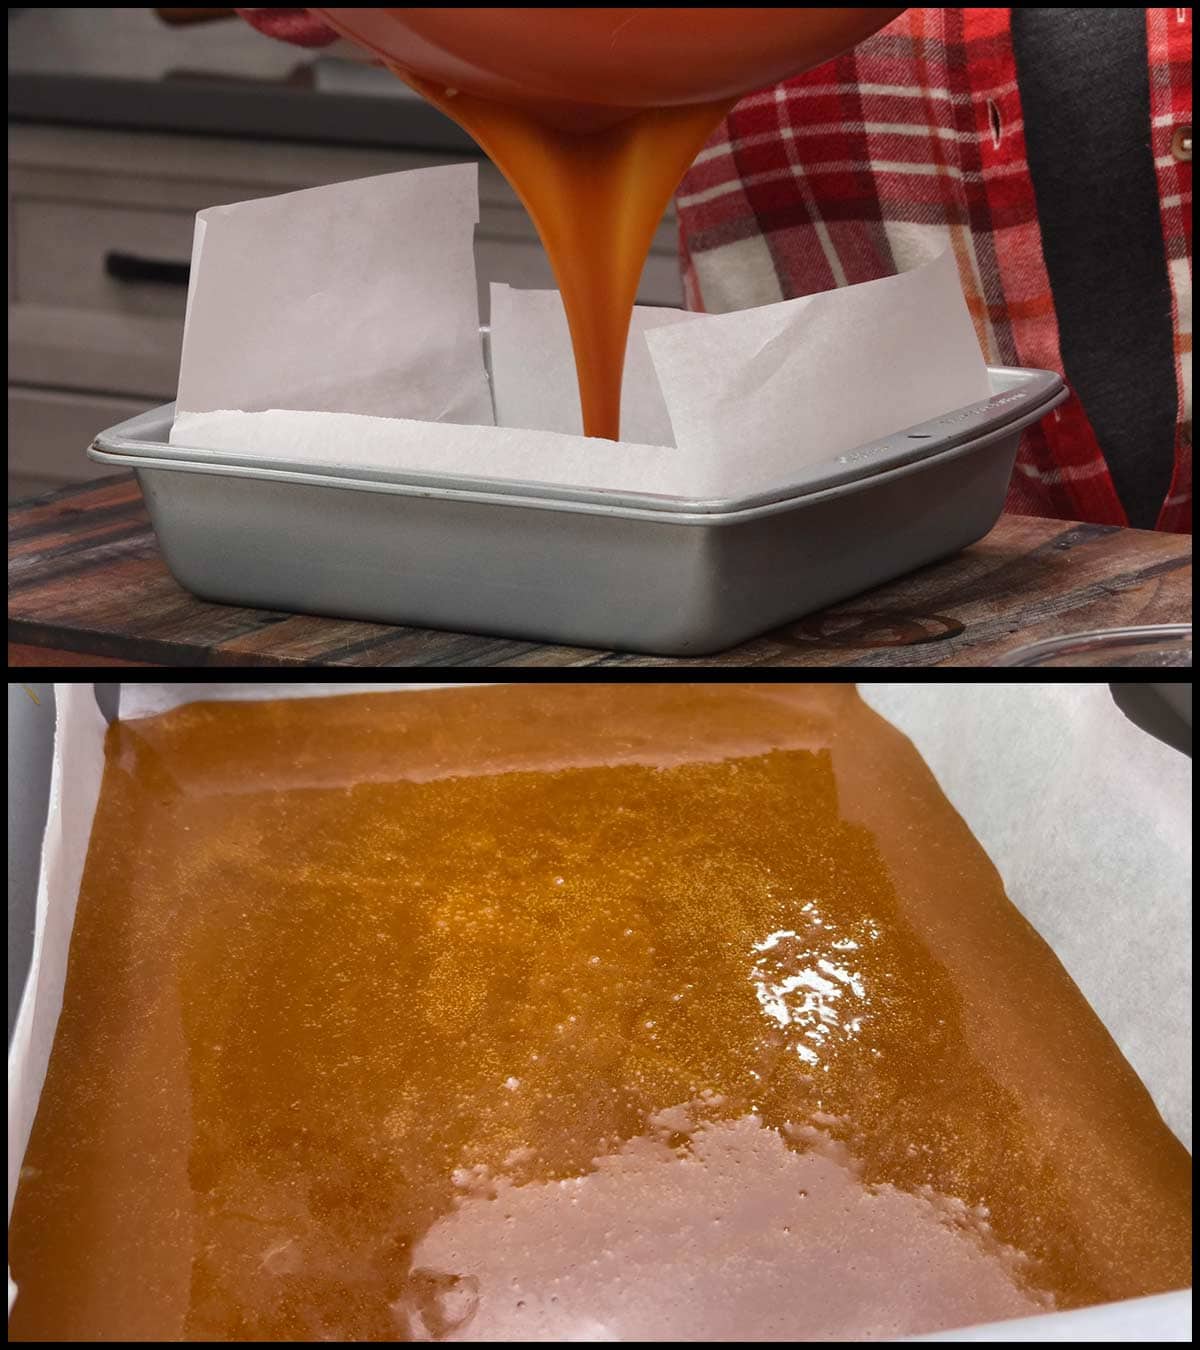 Pouring caramel into a pan.